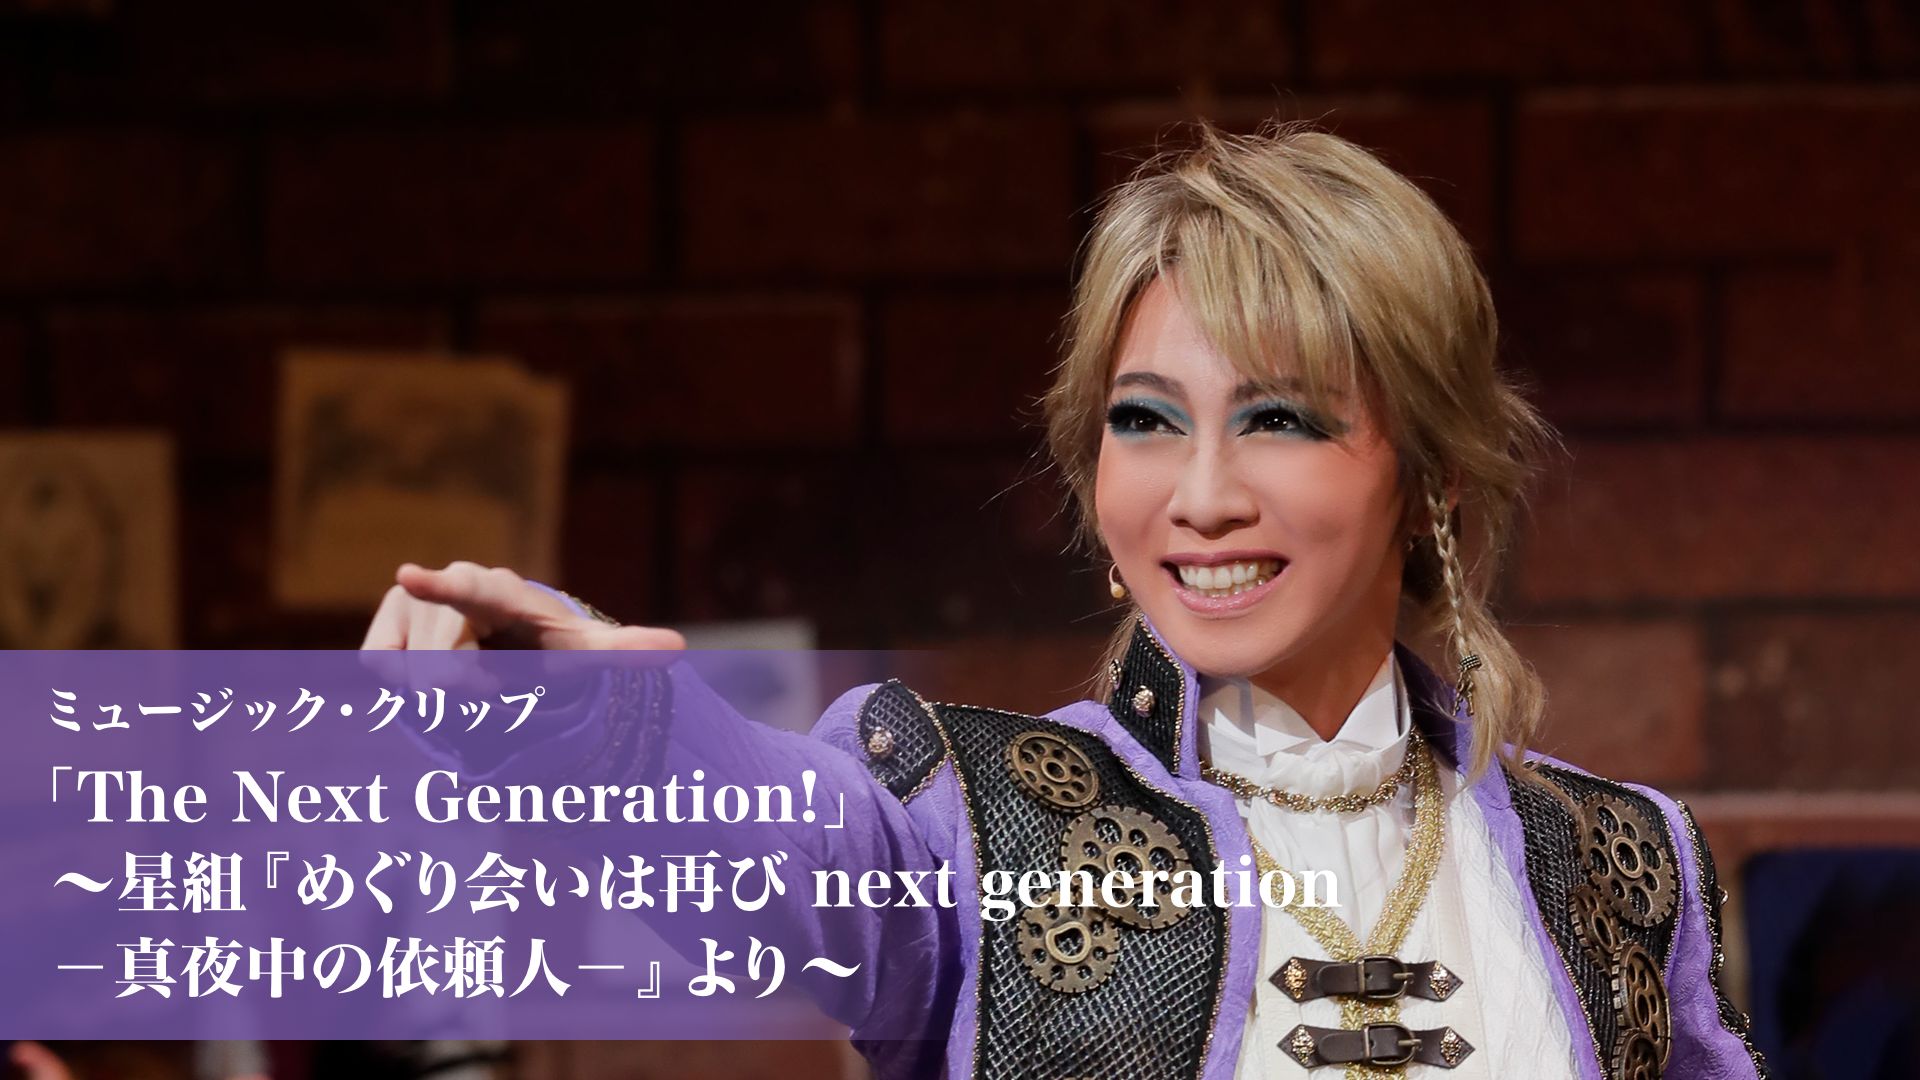 ミュージック・クリップ「The Next Generation！」〜星組『めぐり会いは再び next generation-真夜中の依頼人-』より〜